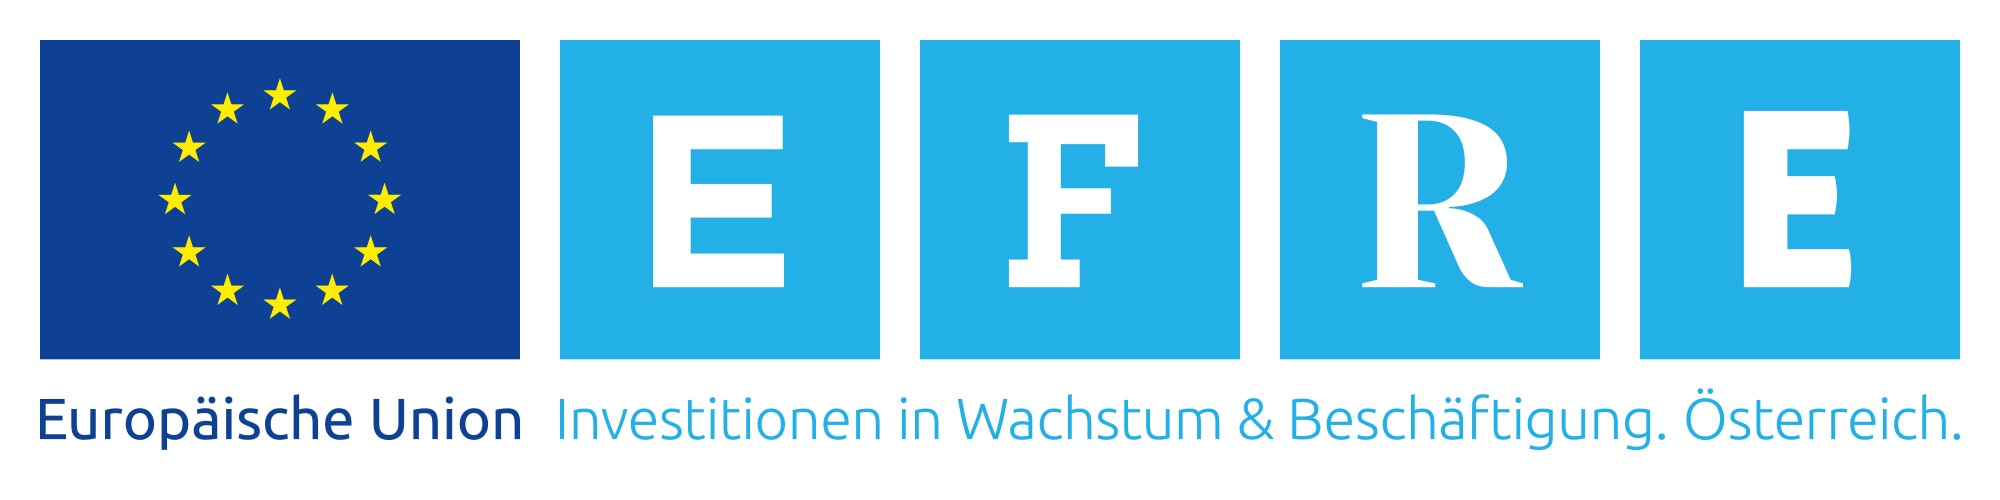 EFRE-Logo2000x500px_RahmenWeiss